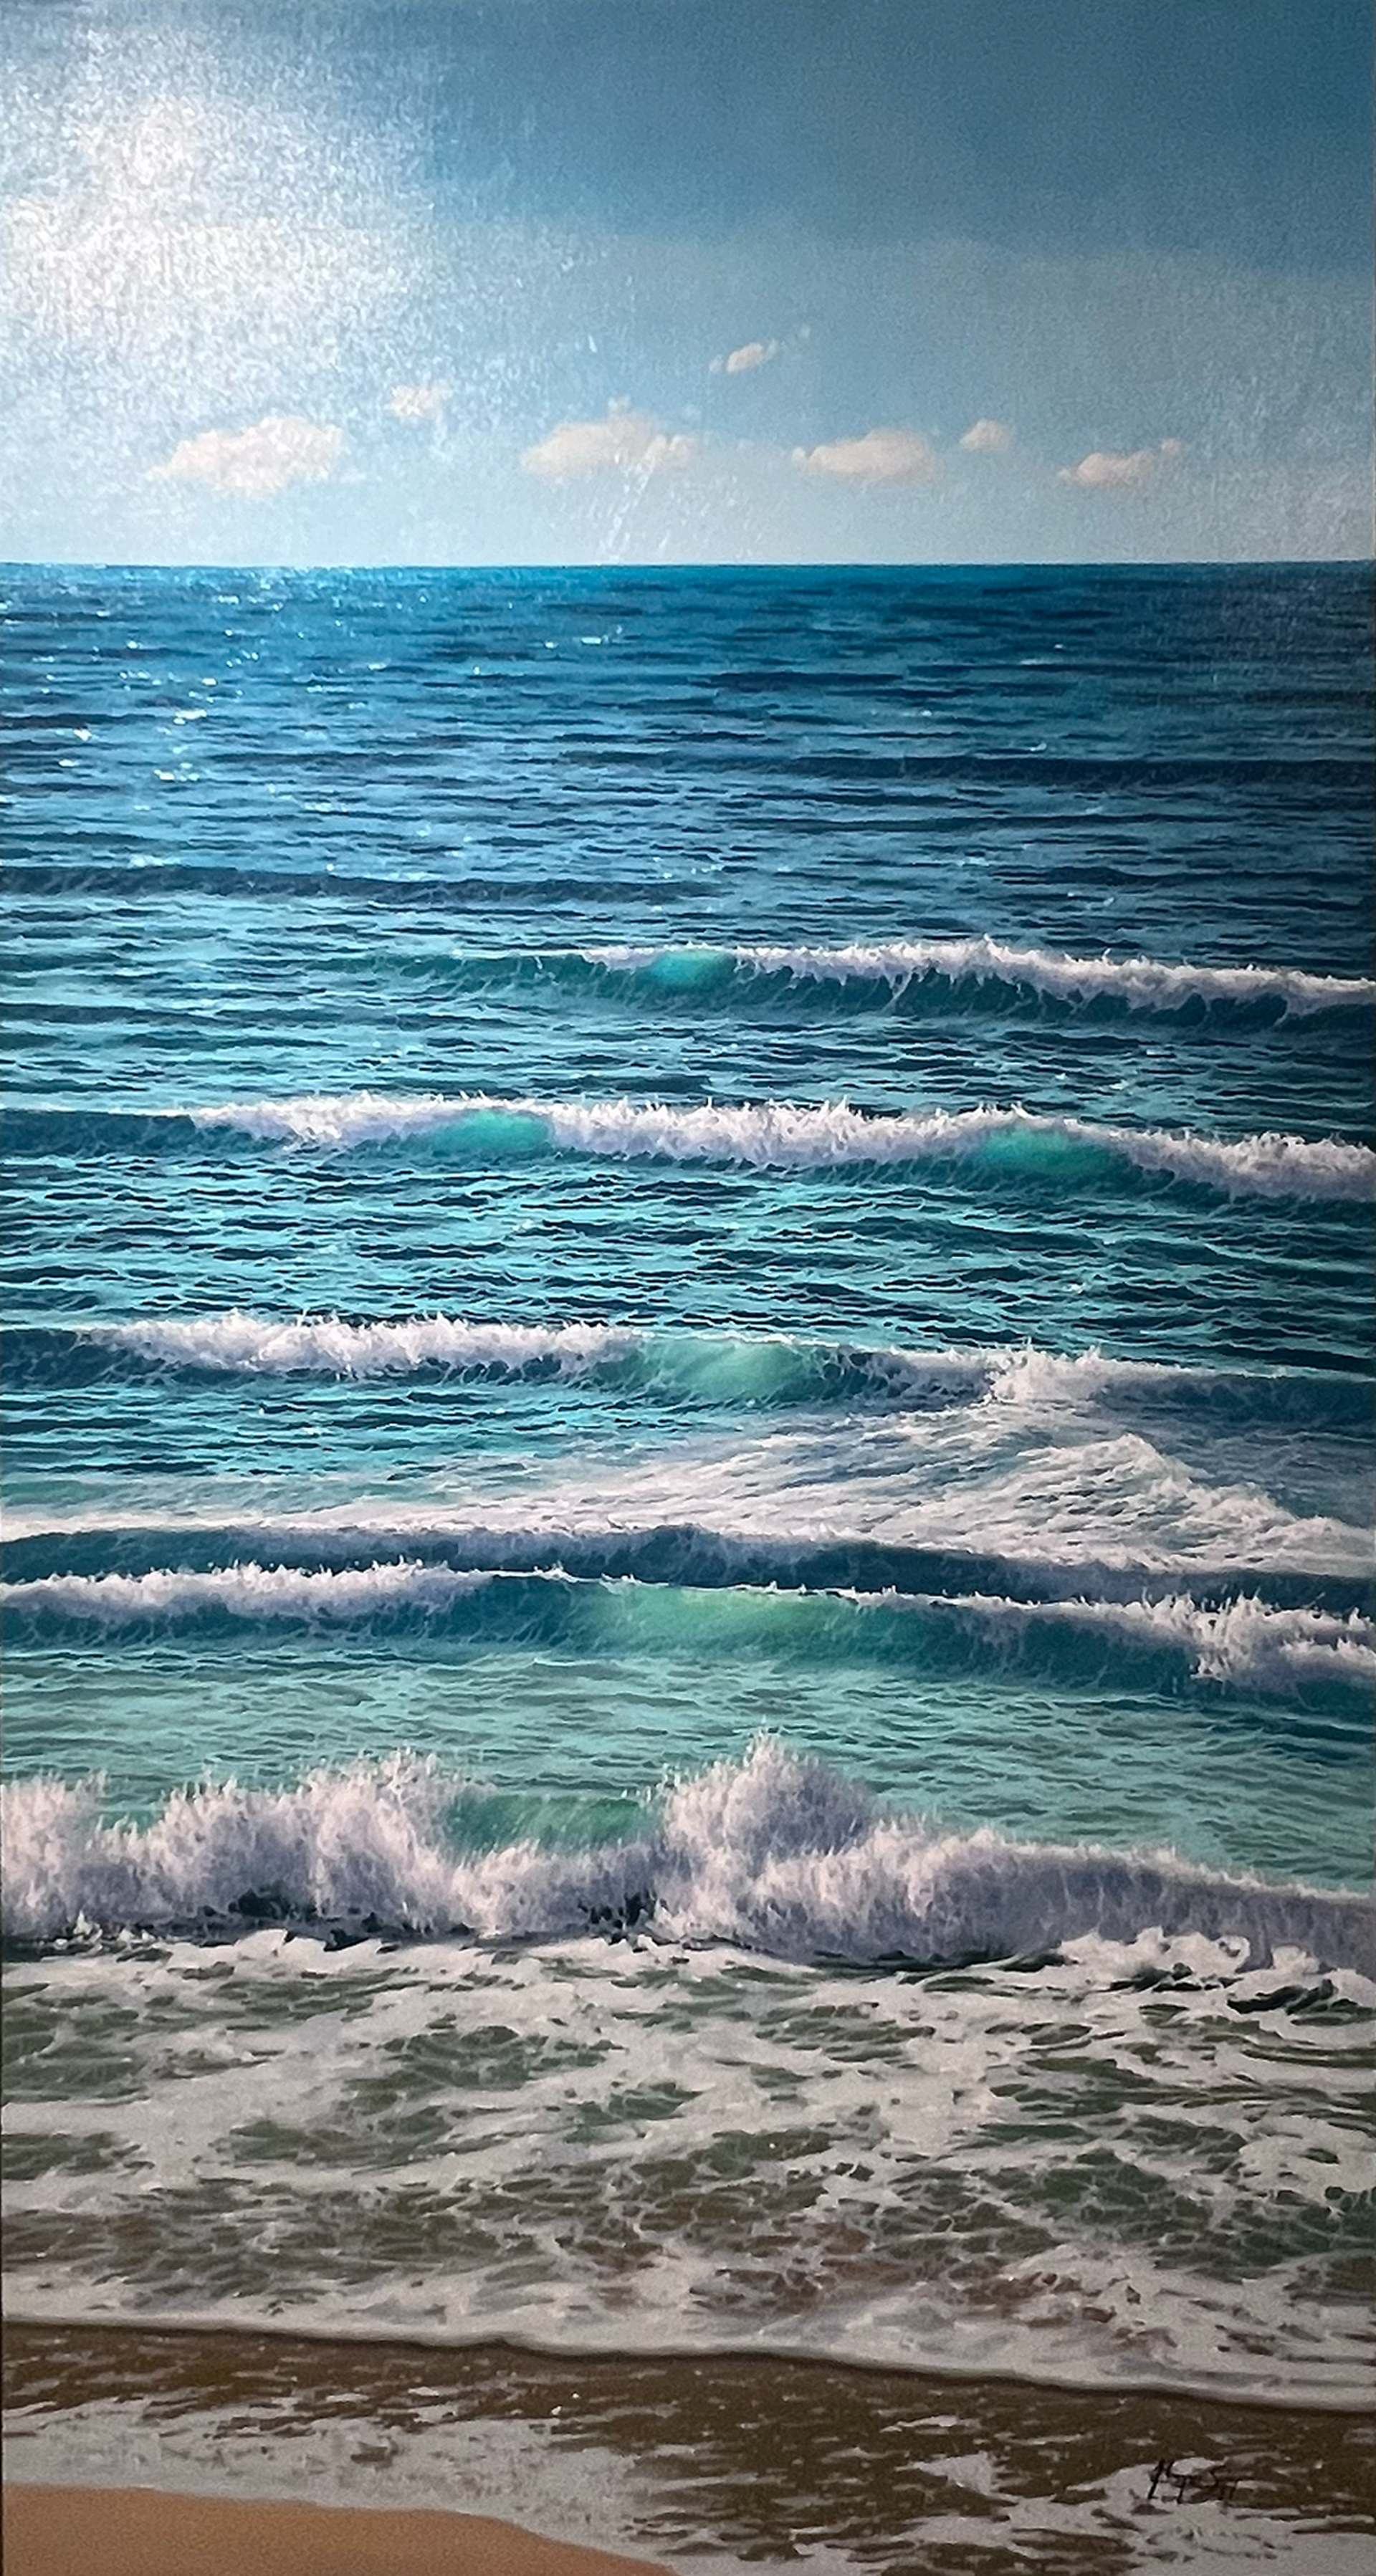 "Crashing Waves" by Antonio Soler